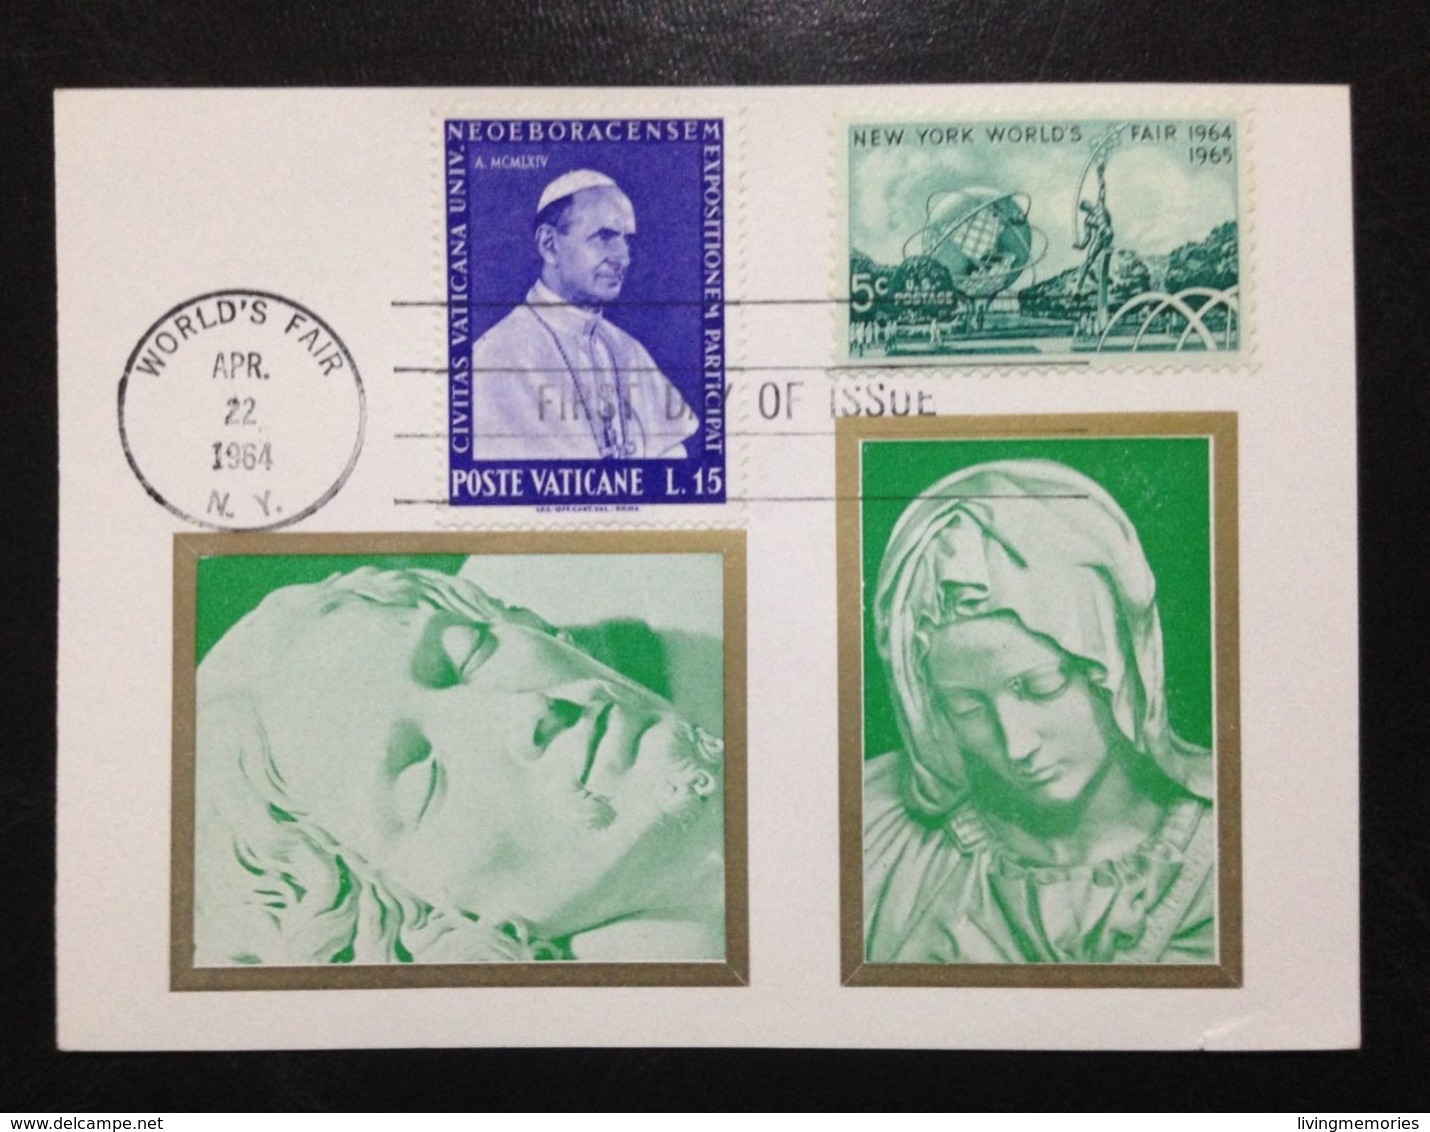 United States, Souvenir Sheet, WORLD'S FAIR NEW YORK, POPE PAUL VI, 1964 - Ganze Bögen